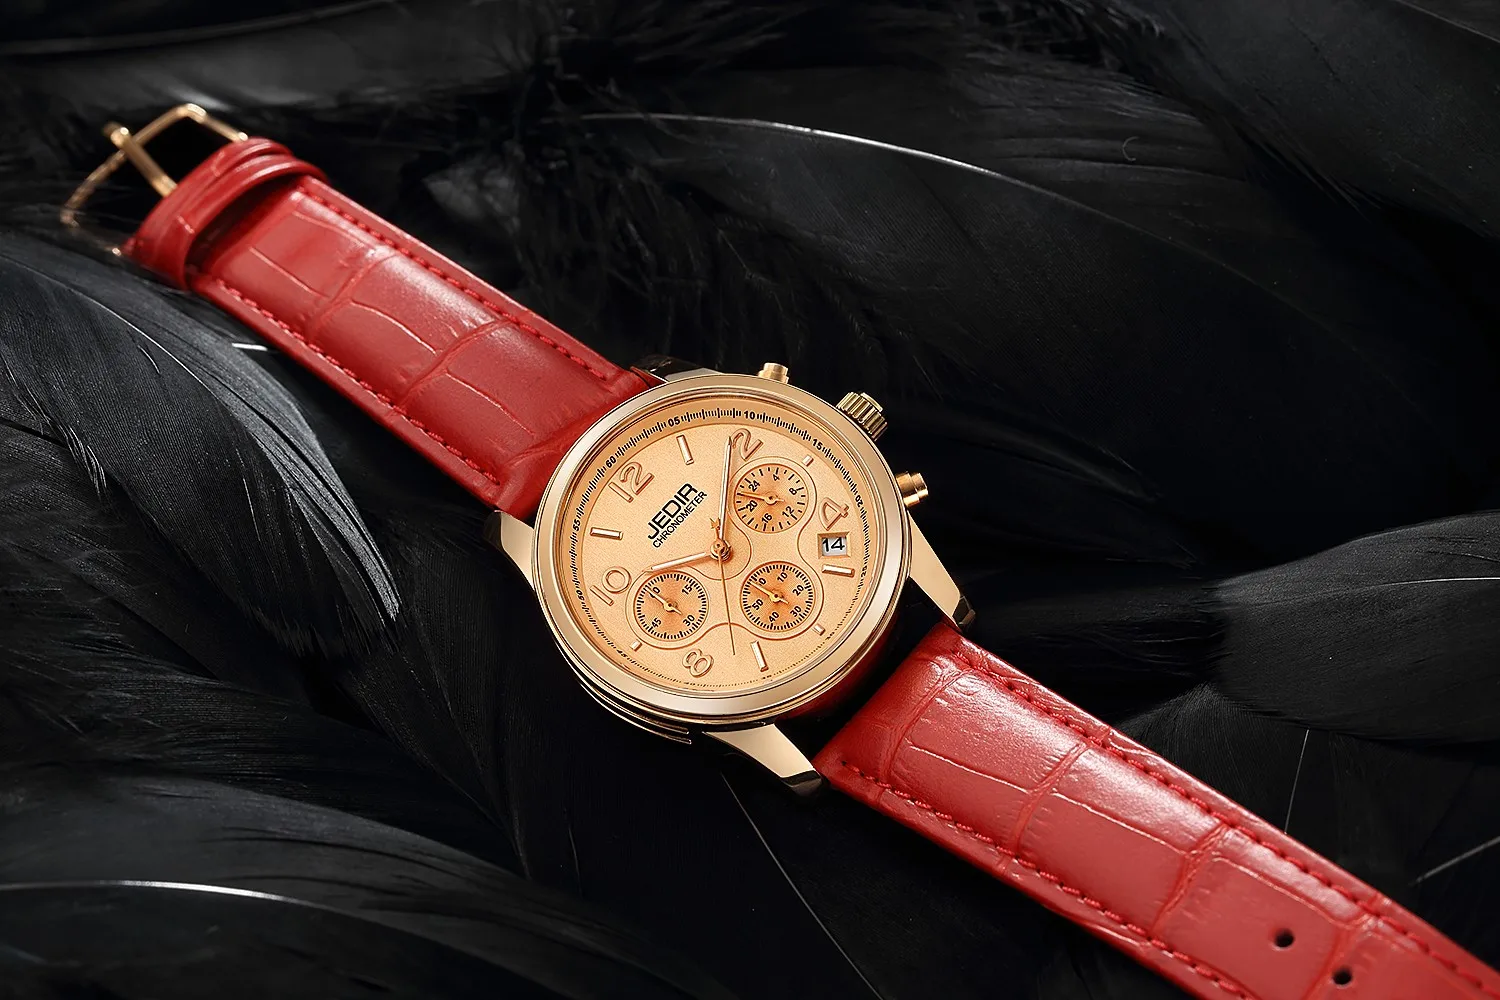 2019 Элитный бренд женские часы хронограф модные пояса из натуральной кожи наручные кварцевые девушка часы для женщин любителей платье часы